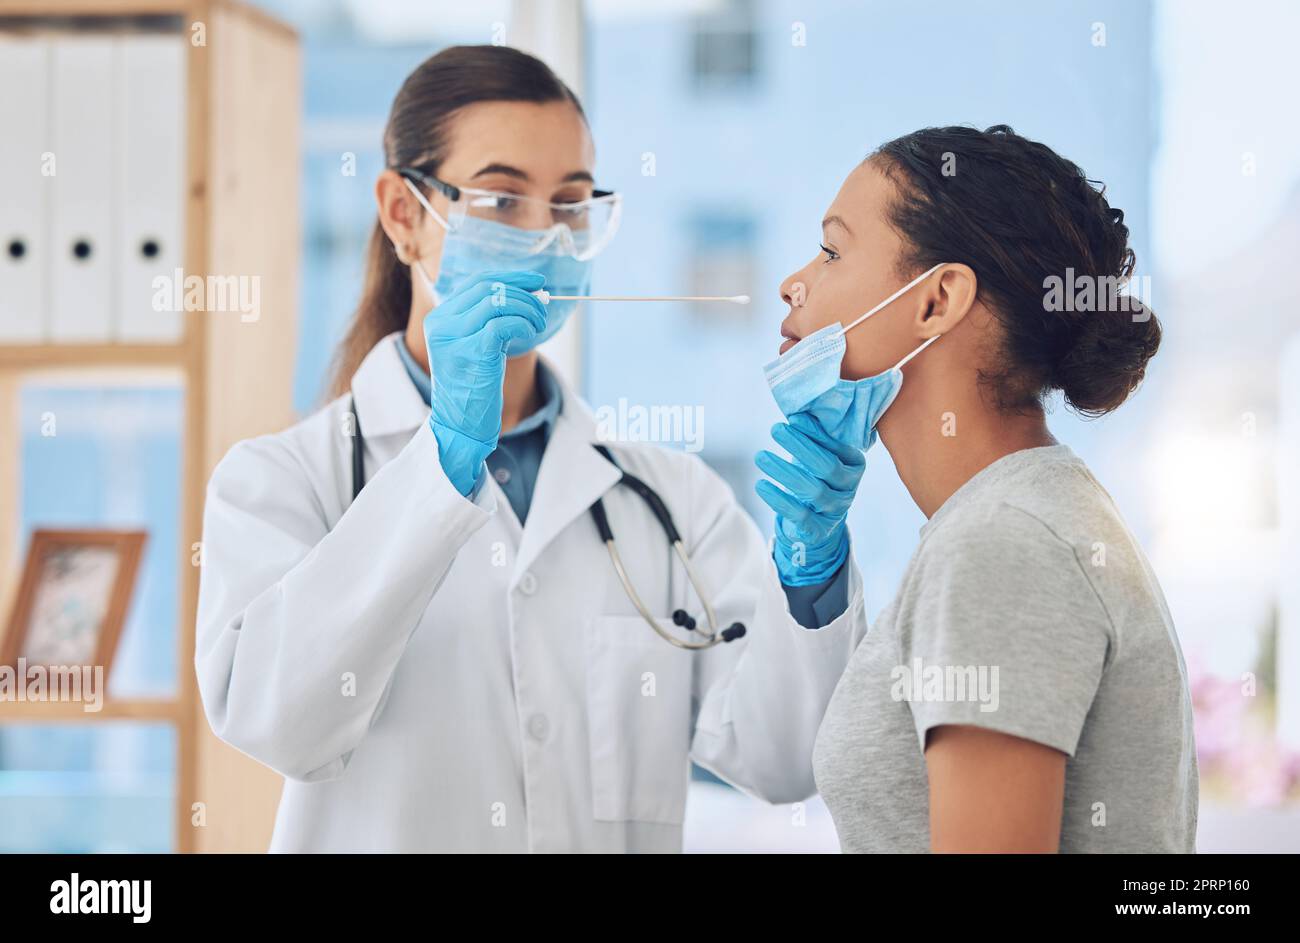 Medico che fa un test covid su una paziente prelevando un campione con tampone naso nel suo ufficio. Operatore sanitario e donna con maschera facciale in consultazione clinica durante la pandemia di coronavirus in ospedale Foto Stock